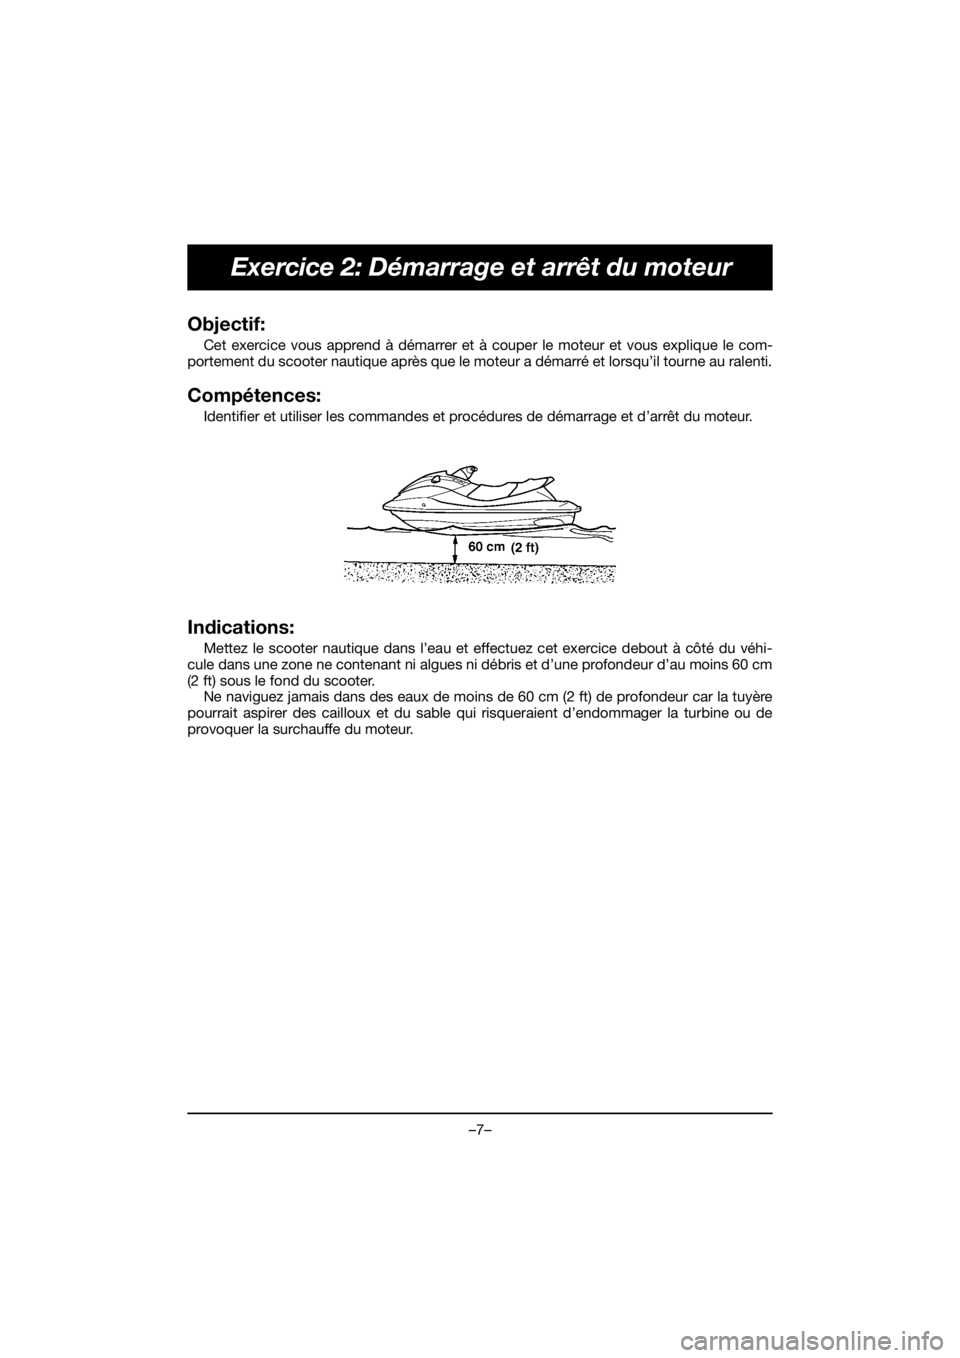 YAMAHA EX 2021  Manuale de Empleo (in Spanish) –7–
Exercice 2: Démarrage et arrêt du moteur
Objectif: 
Cet exercice vous apprend à démarrer et à couper le moteur et vous explique le com-
portement du scooter nautique après que le moteur 